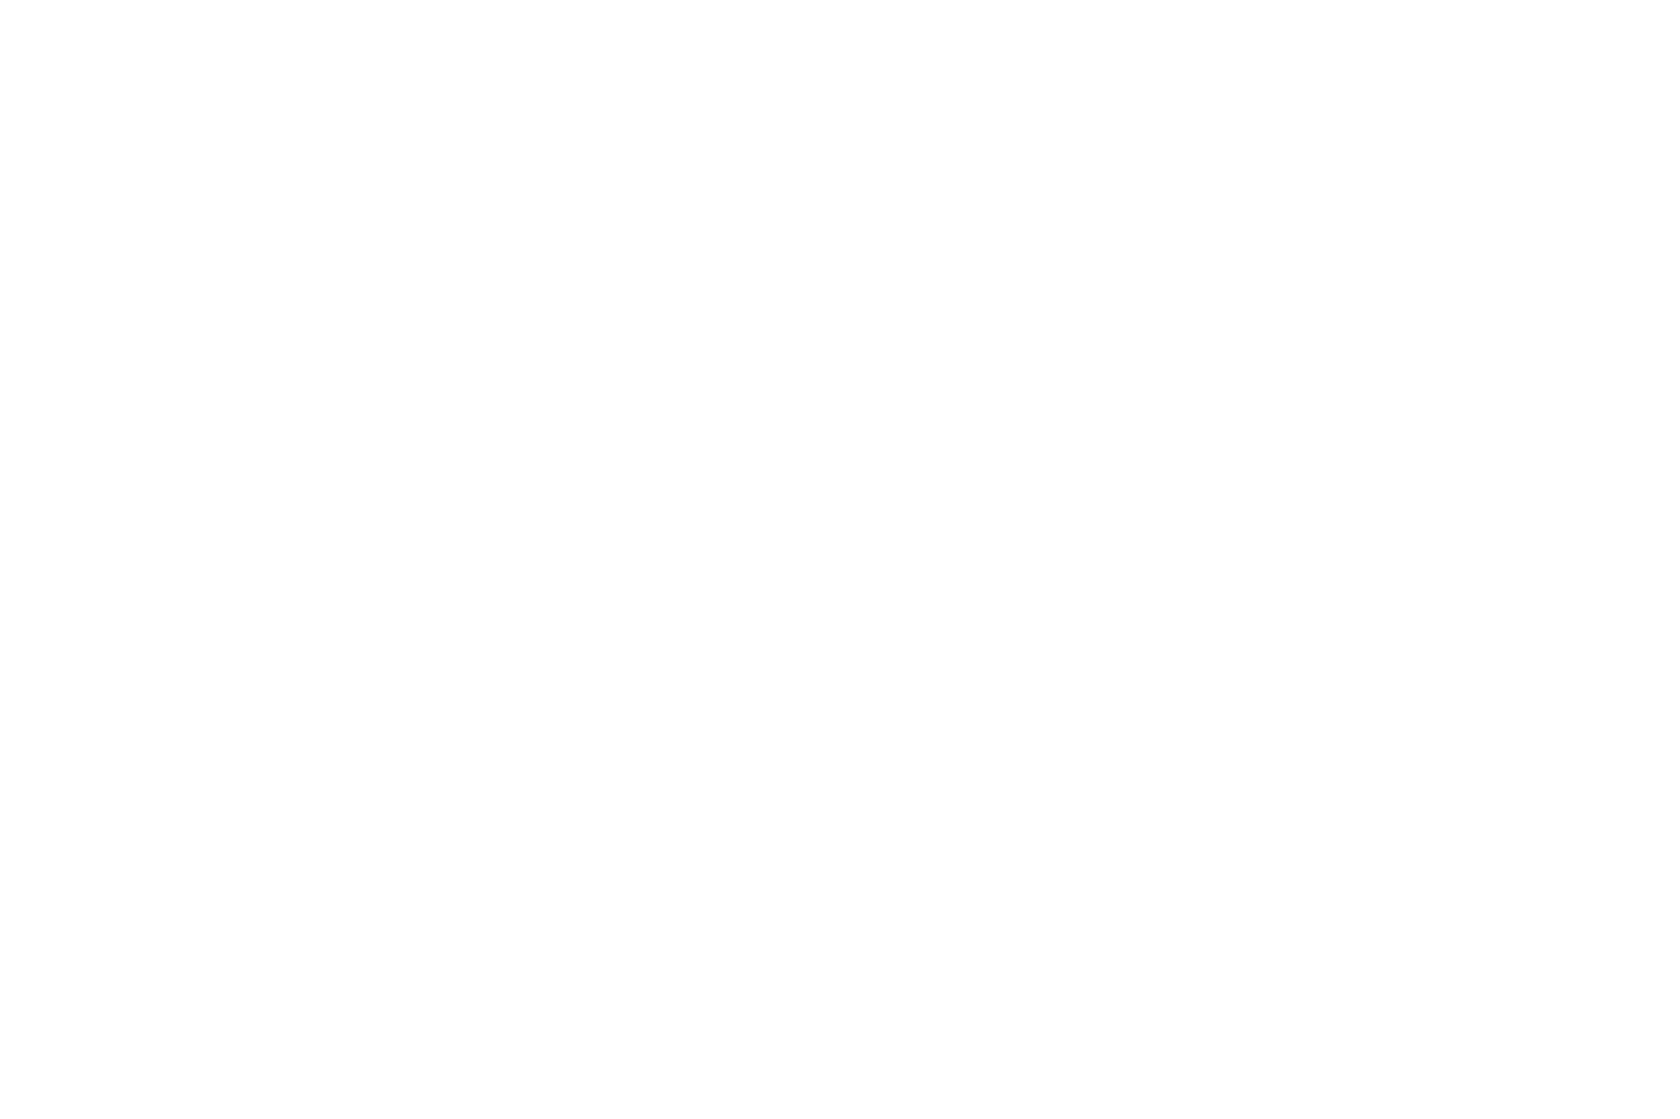 Интерьер частной квартиры в стиле нео-барокко, столовая, архитектор Анастасия Жук, фотограф Москва. Георгий Безбородов, интерьерная съемка, фотограф Анталия, фотосессия в анталии